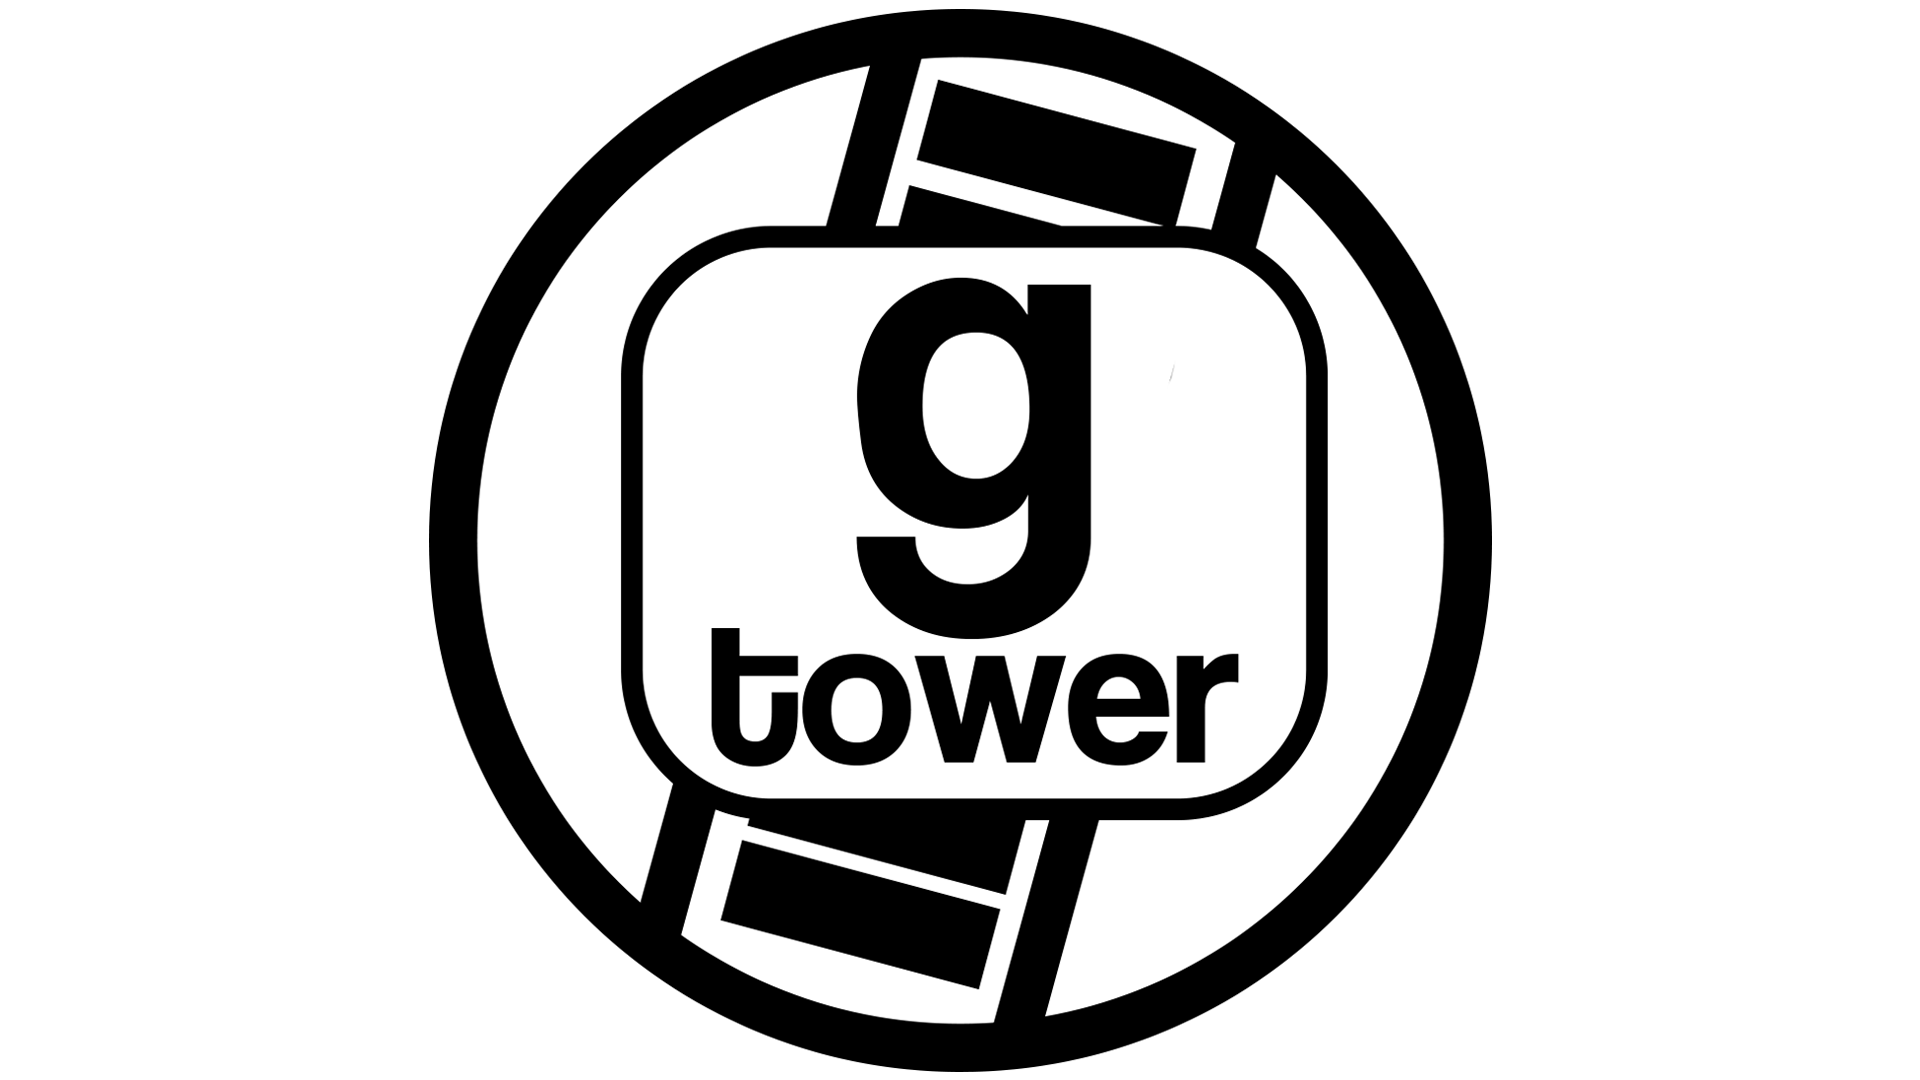 gmod logo